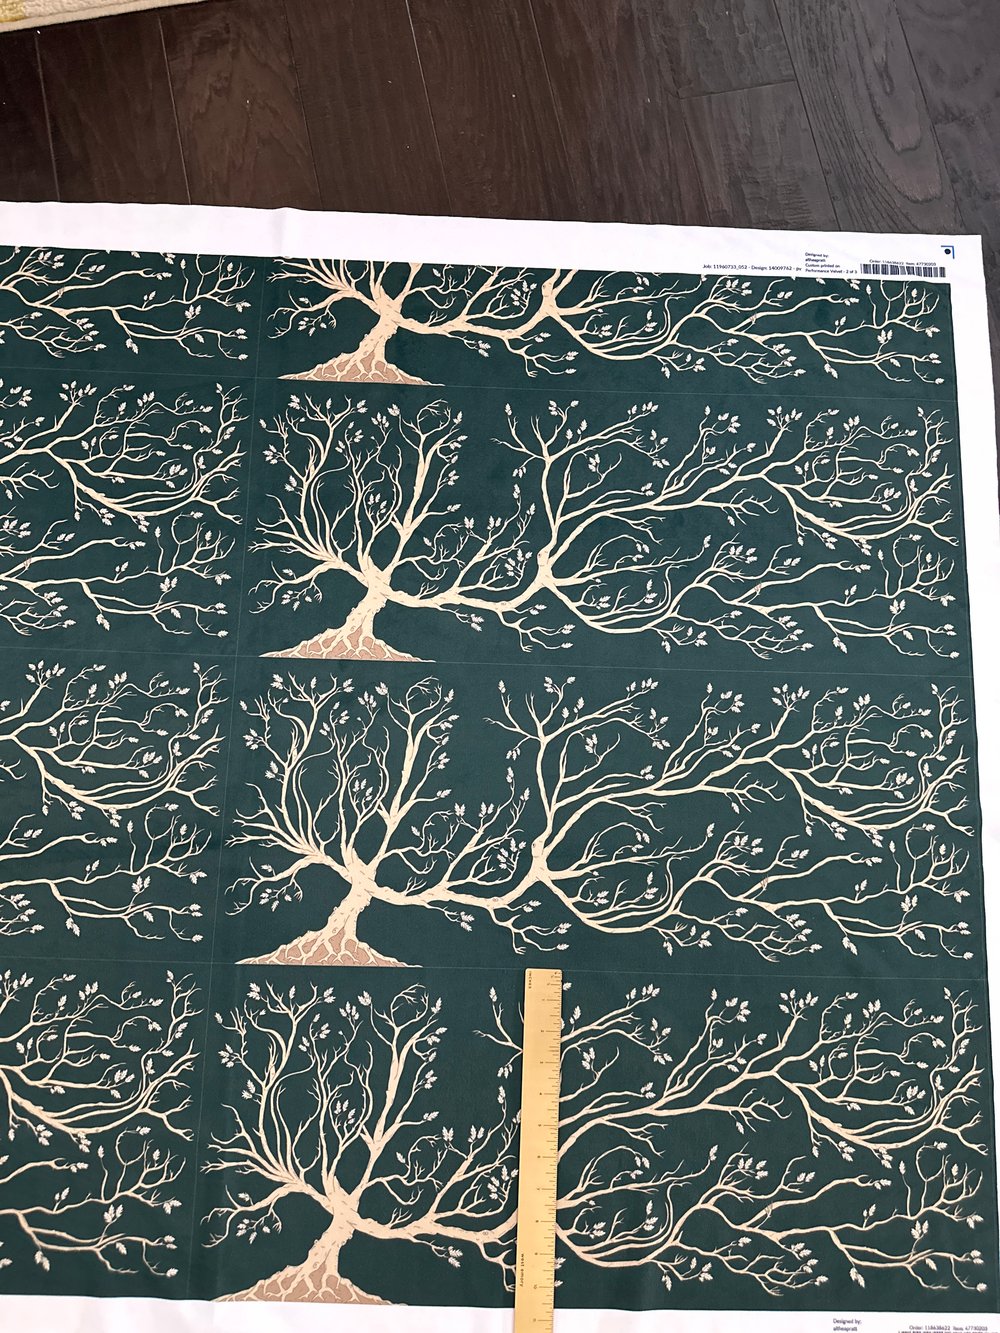 Image of Black Family Tree Tapestry Velvet for Board Making